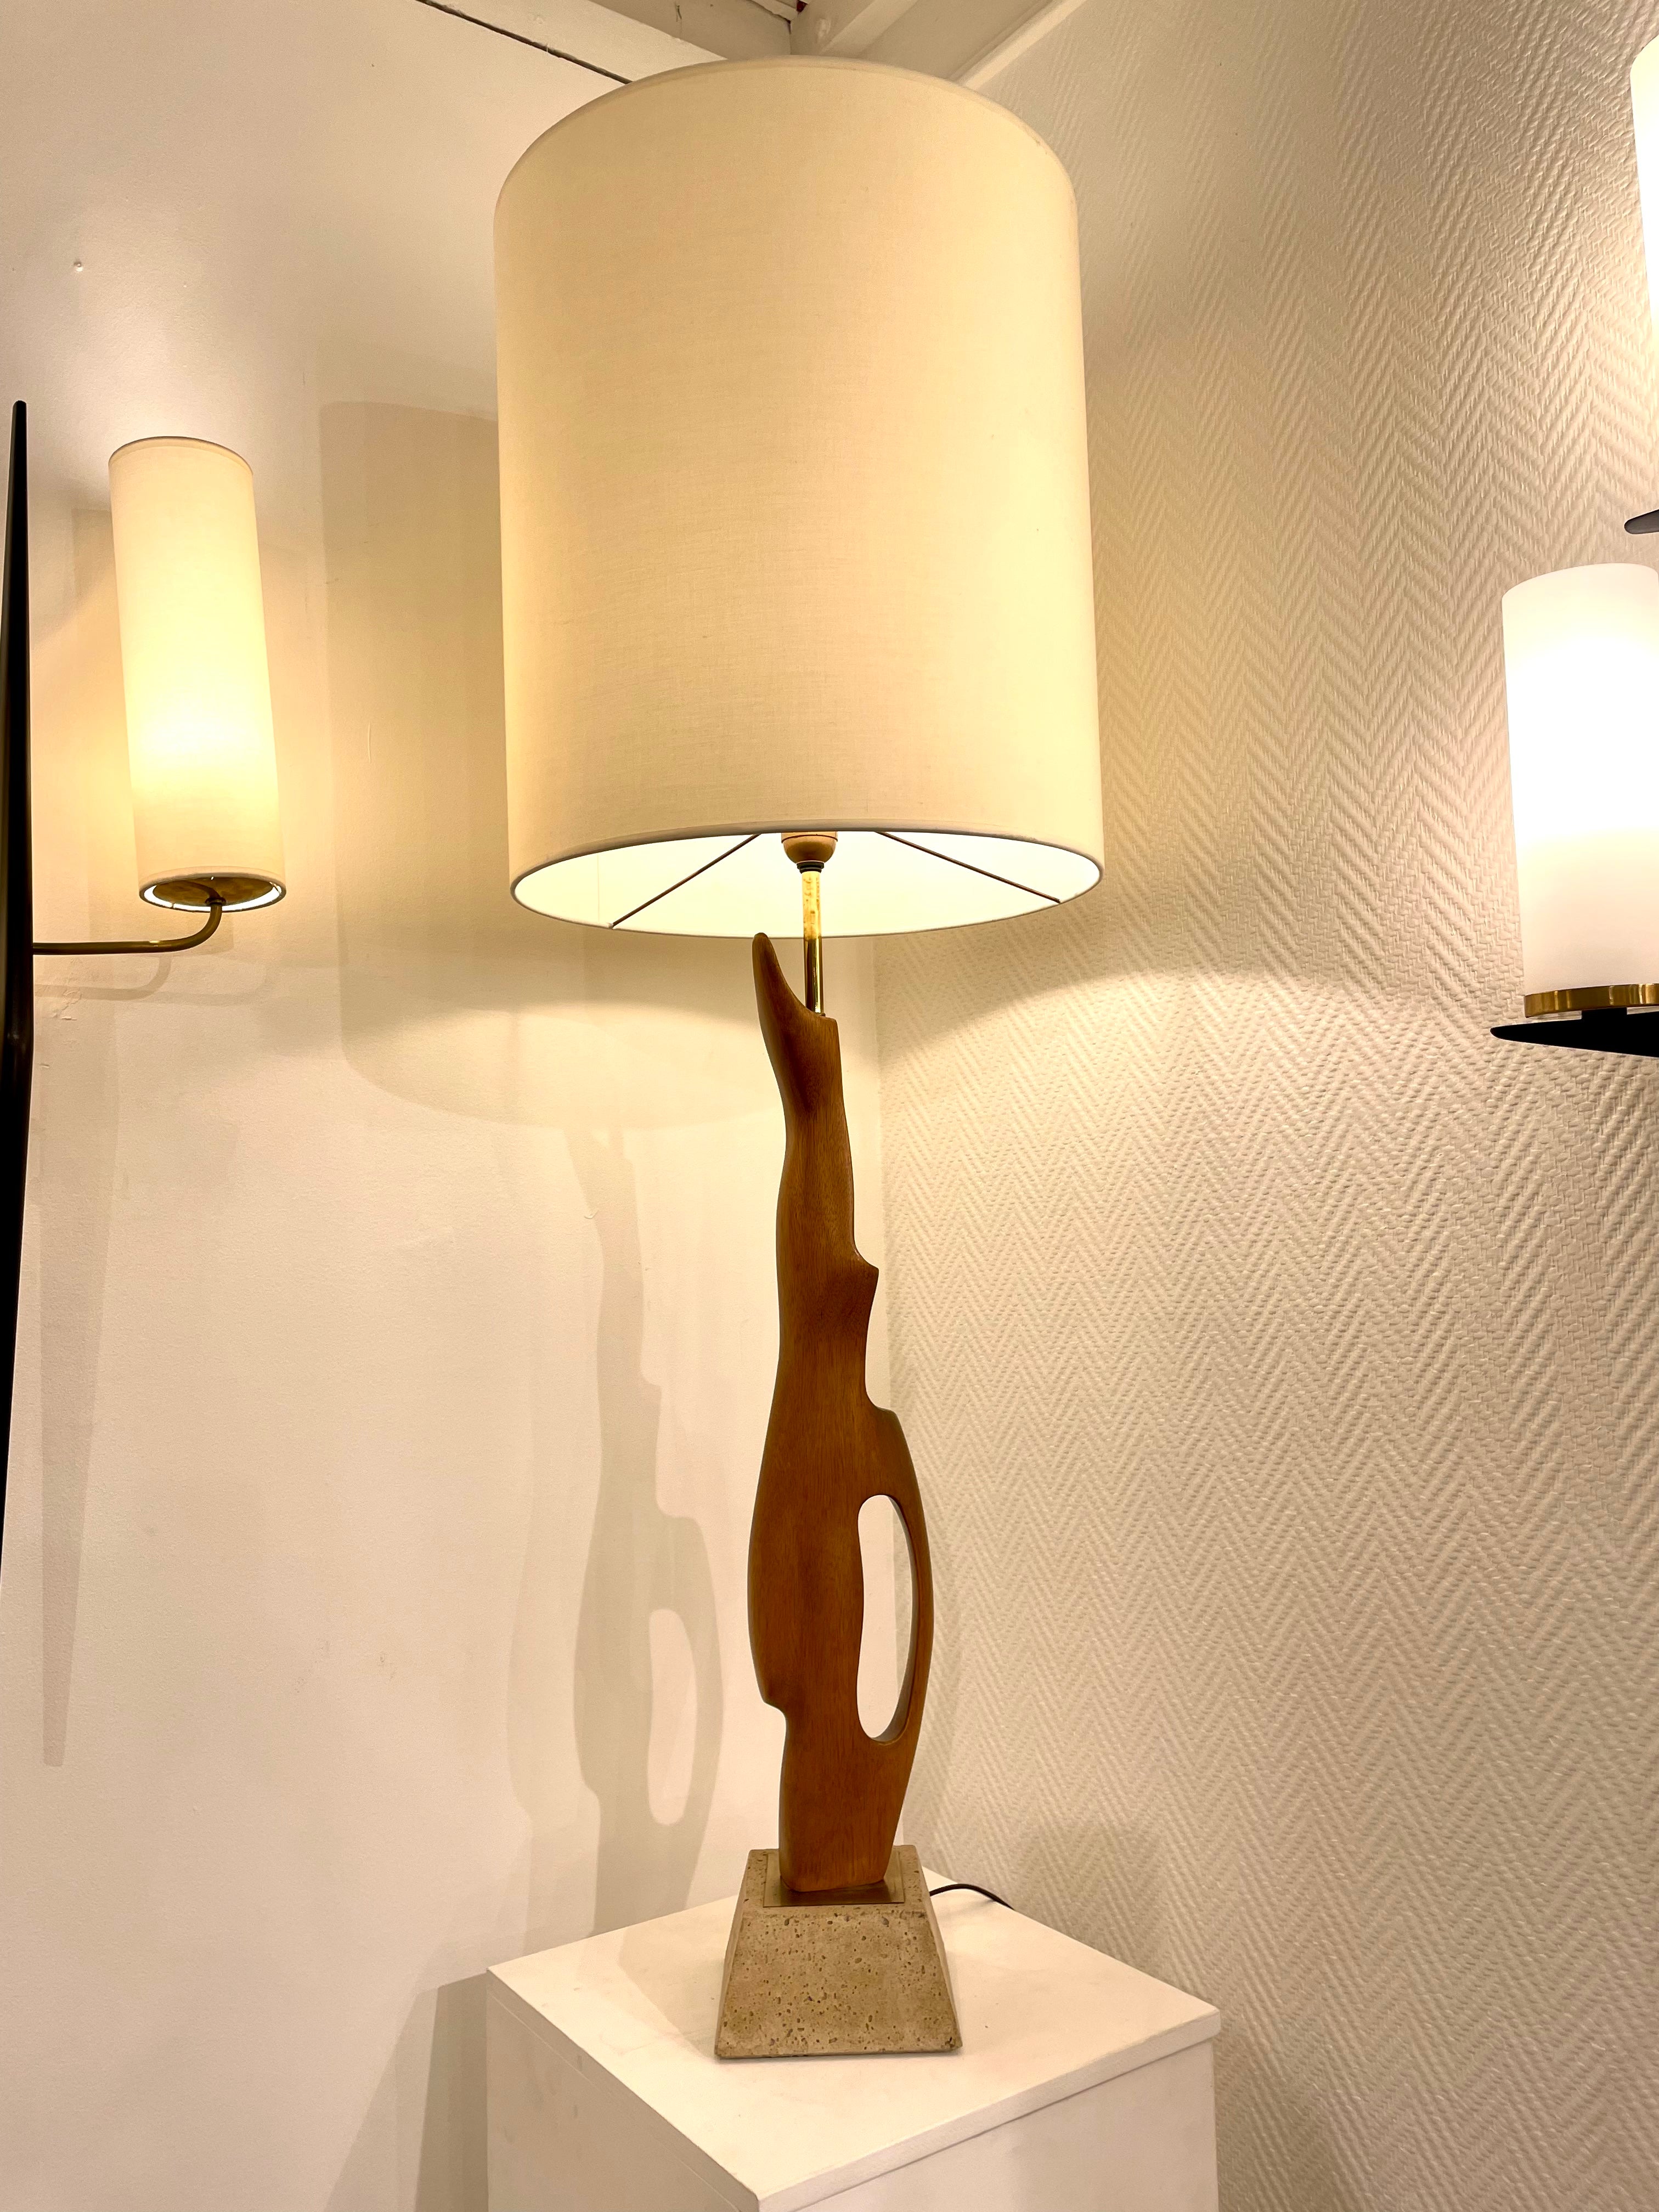 Lampe-sculpture de 1960 en bois et travertin.